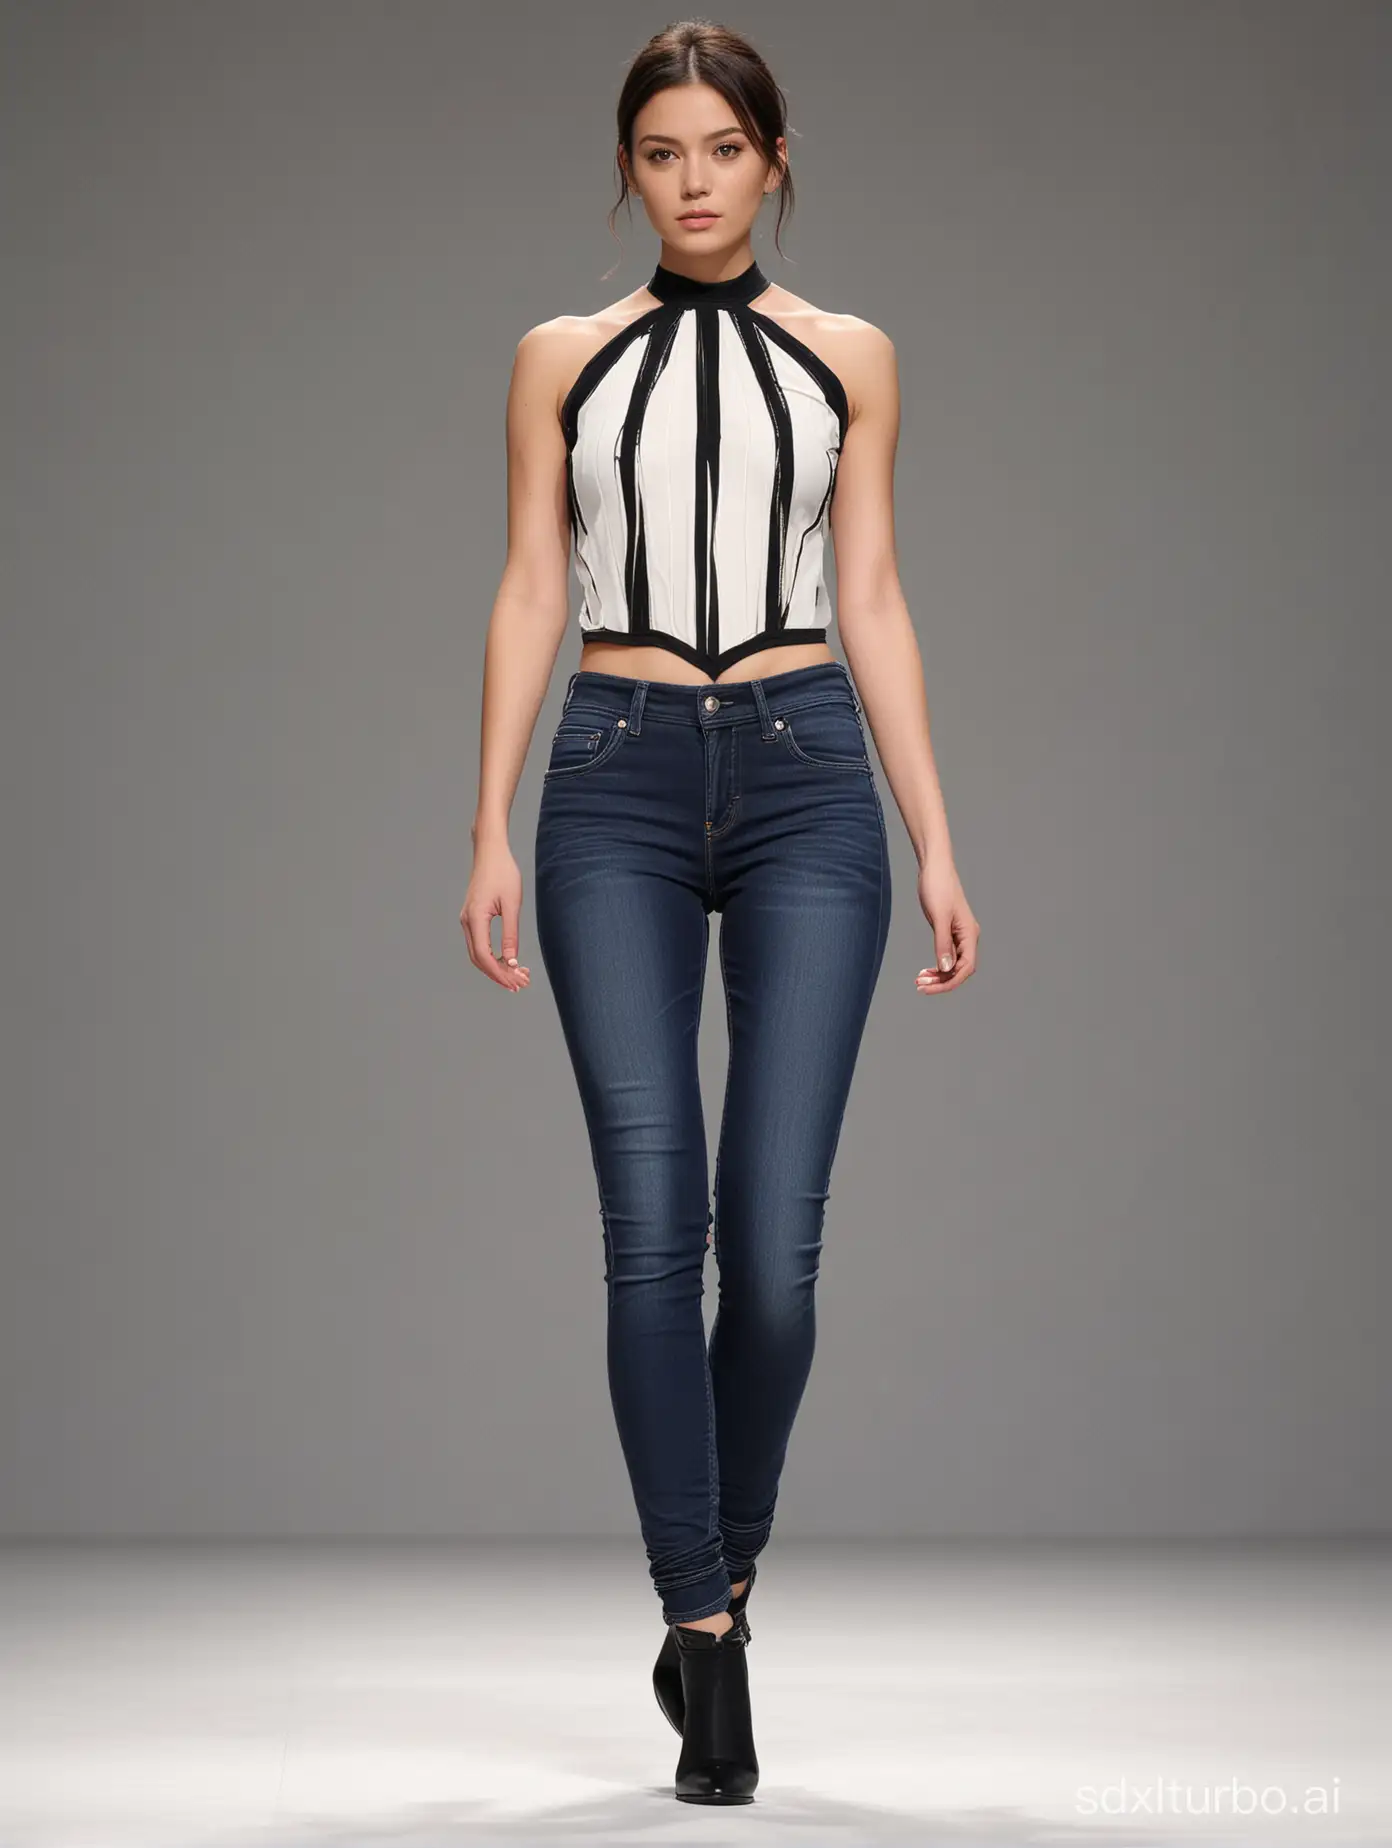 Fashion-Model-Liza-Gonzales-Struts-in-Skinny-Jeans-on-Clean-Runway